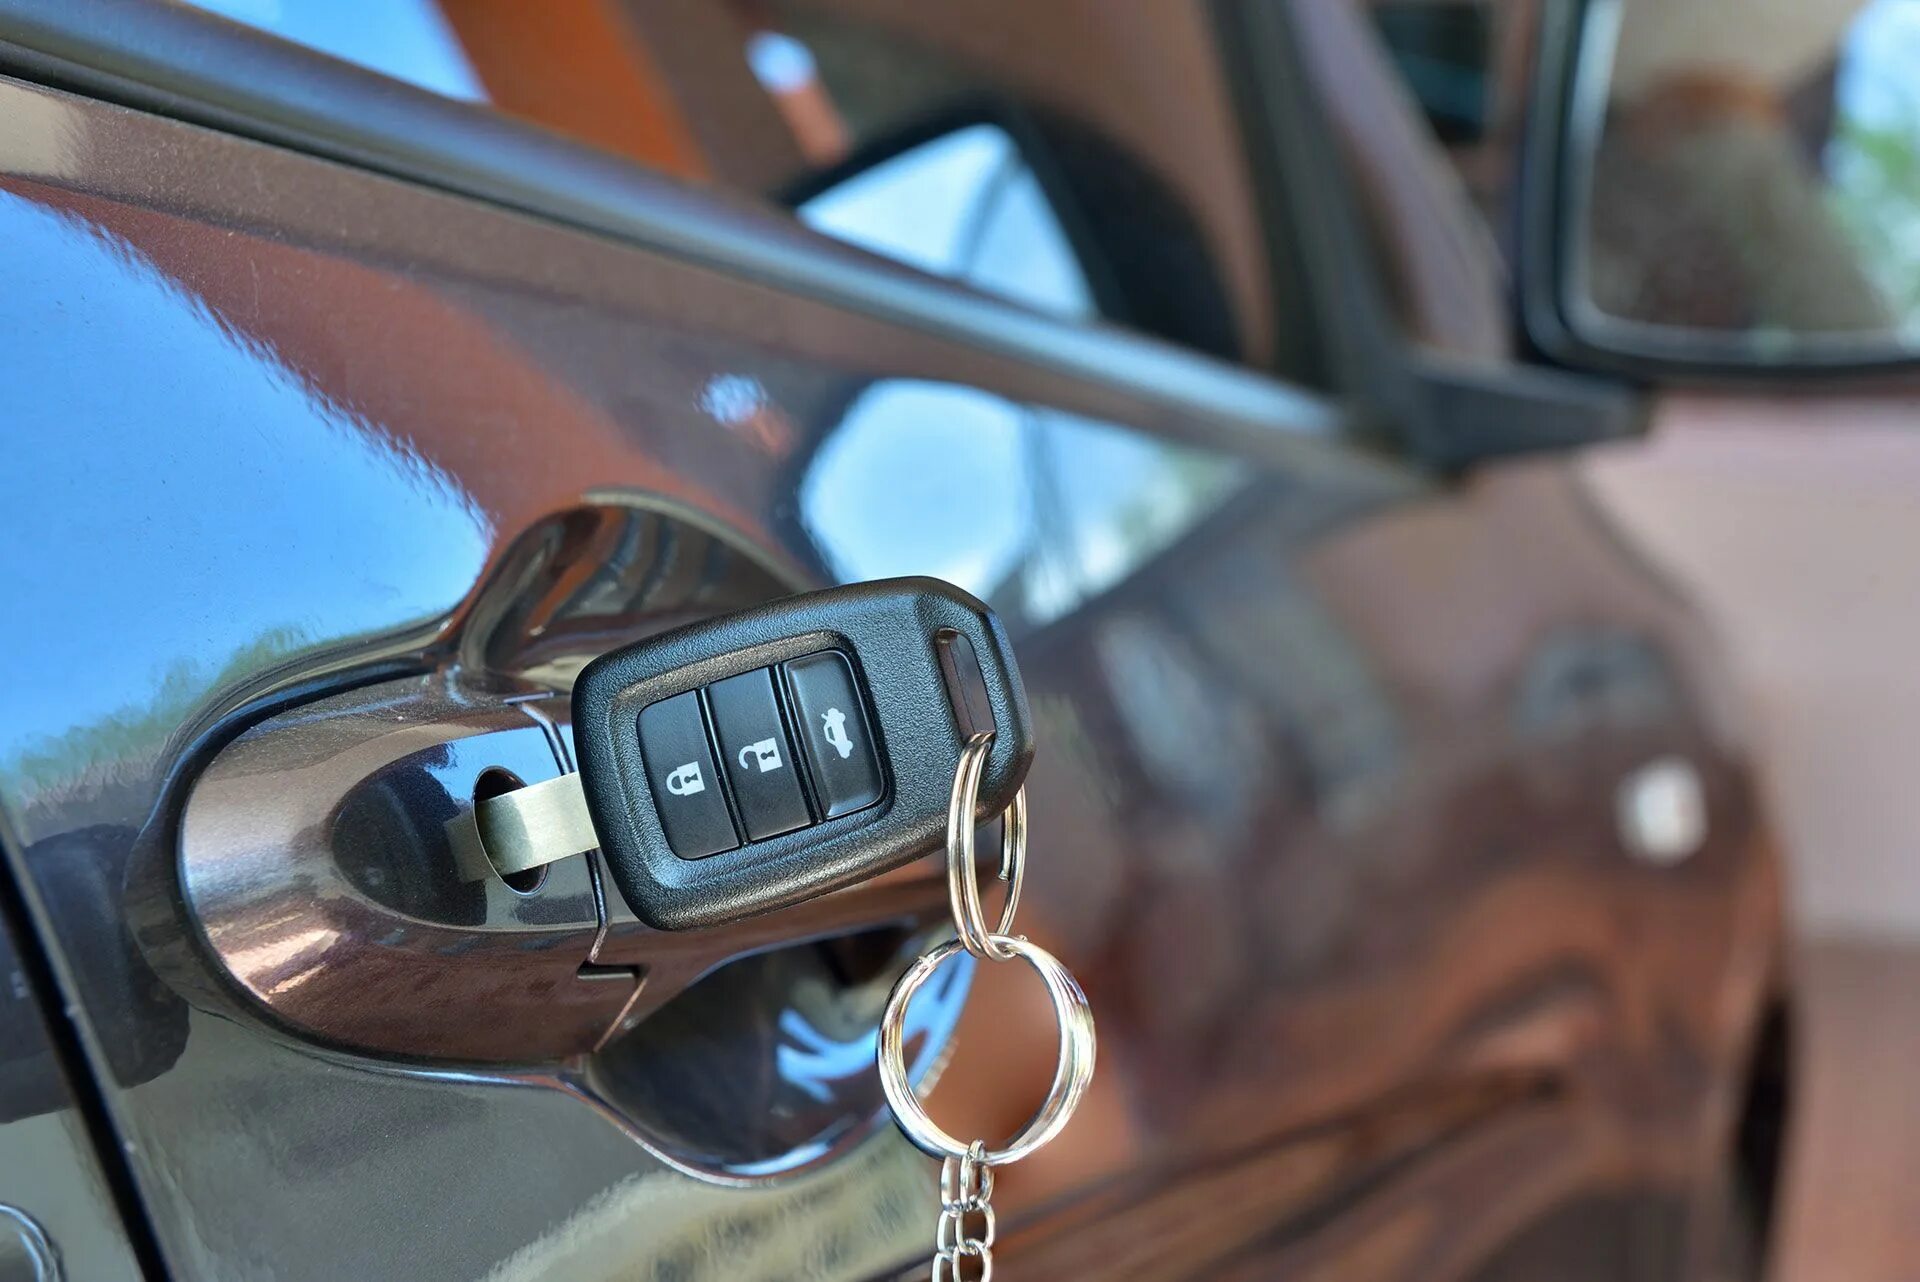 Ключ автомобильный. Ключи от авто. Автомобильные ключи с сигнализацией. Красивый ключ для автомобиля. Keyed my car